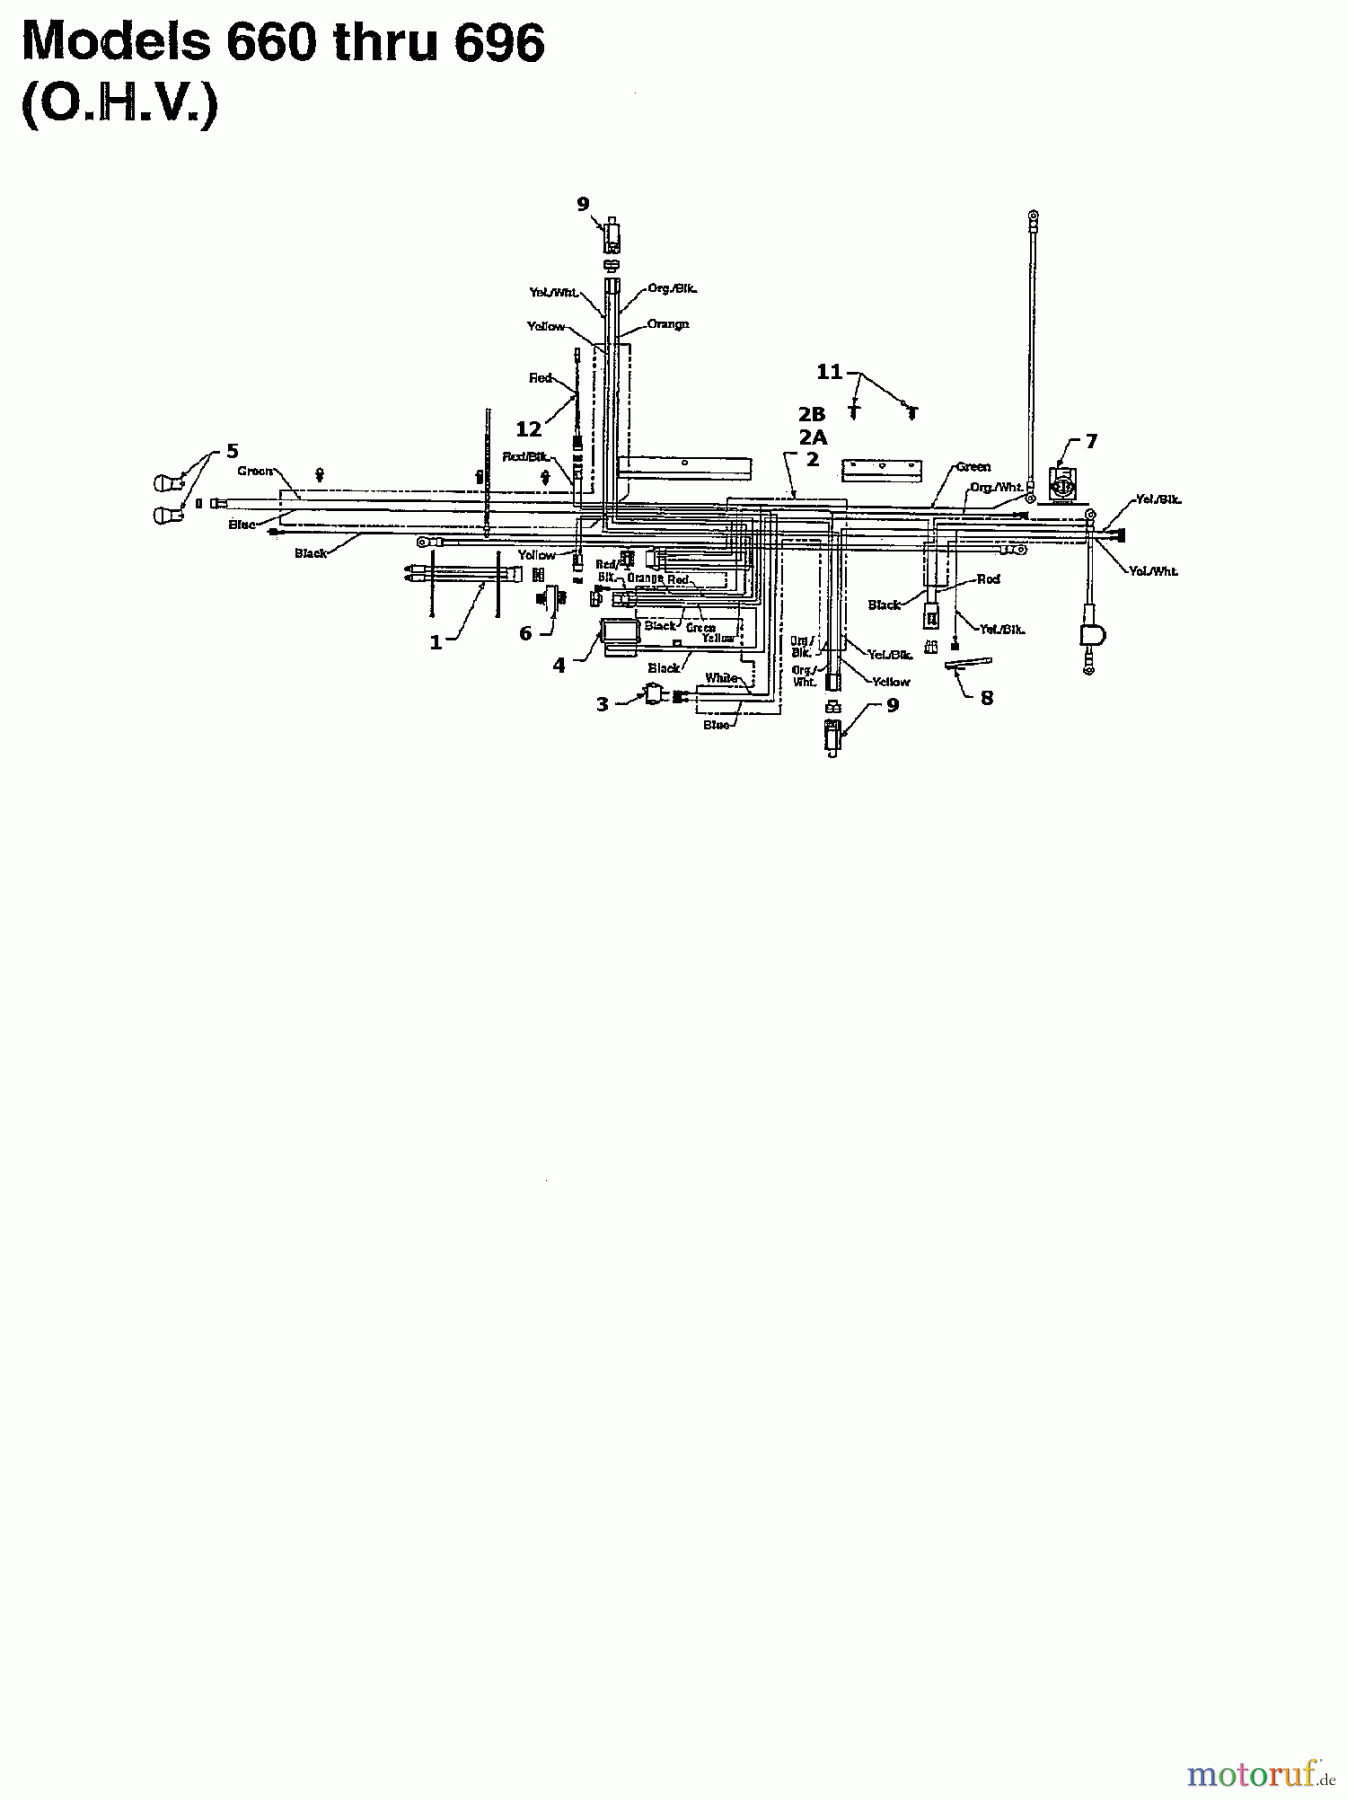  MTD Rasentraktoren B/160 13AM675F678  (1997] Schaltplan für O.H.V.